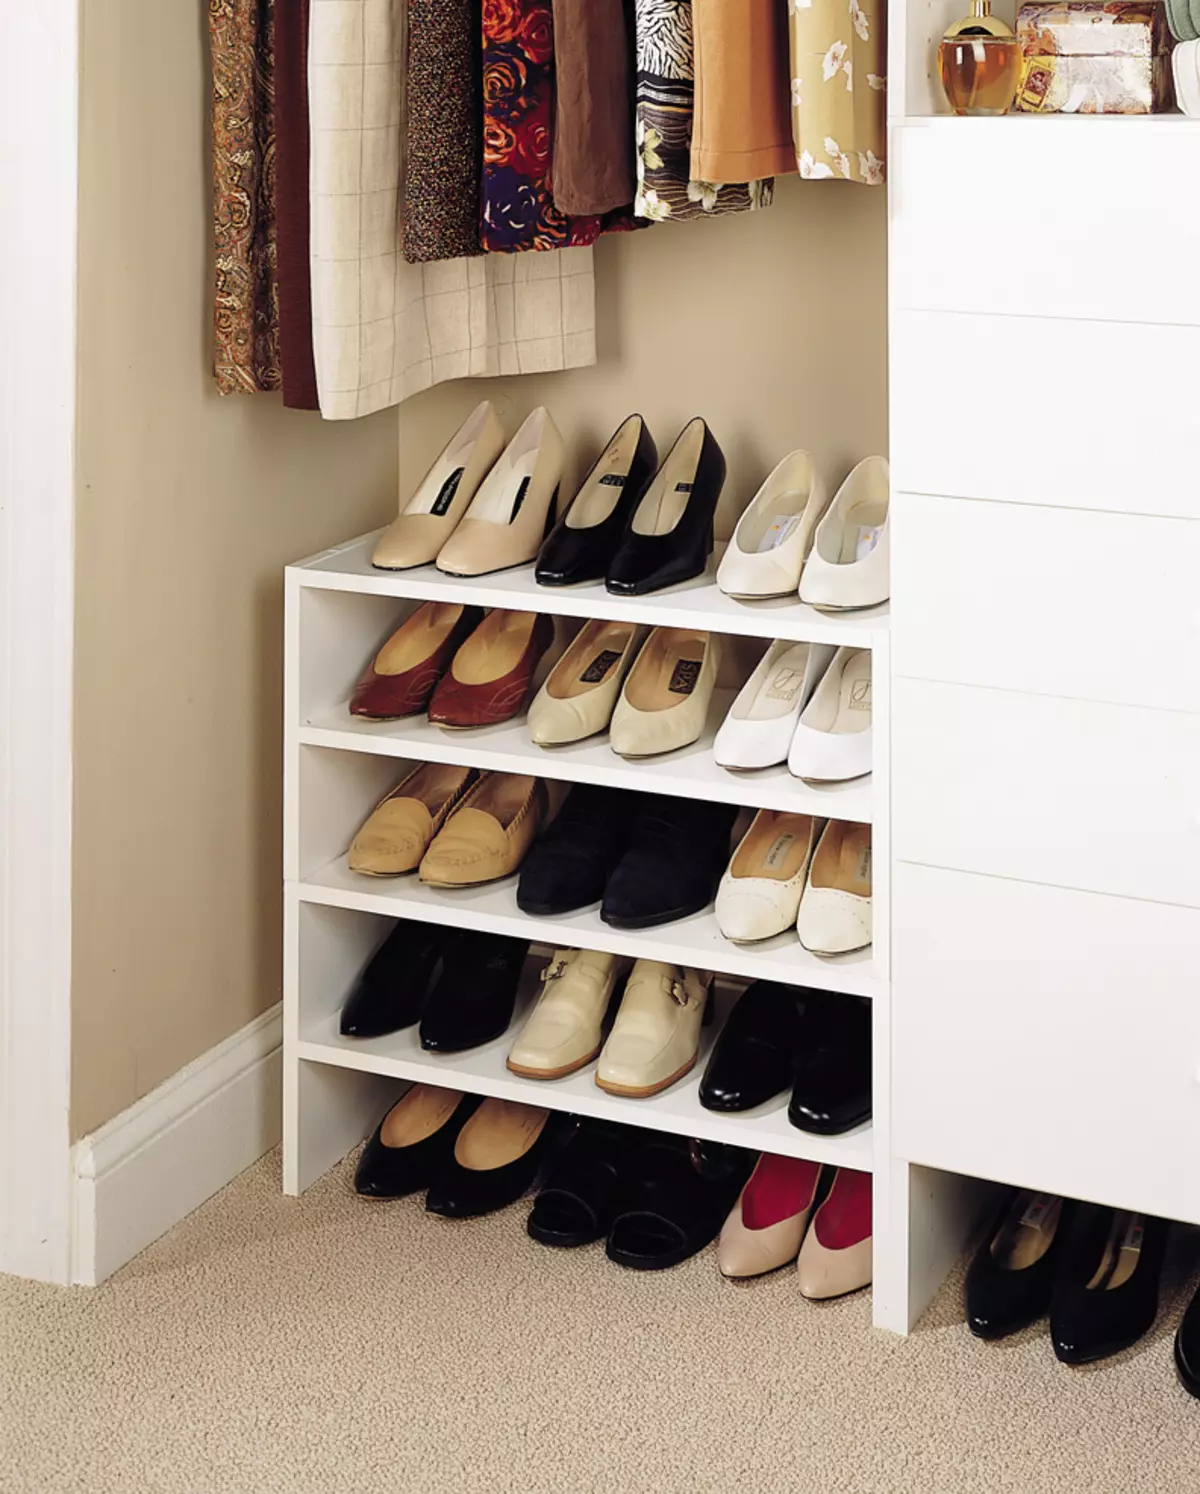 ہالے میں جوتے کے لئے وارڈروبس (61 فوٹو): تنگ اور وسیع جوتے کی الماریاں، اسسمیٹک دروازوں کے ساتھ کابینہ، اعلی کونیی جوتے اور دیگر اختیارات 9327_56